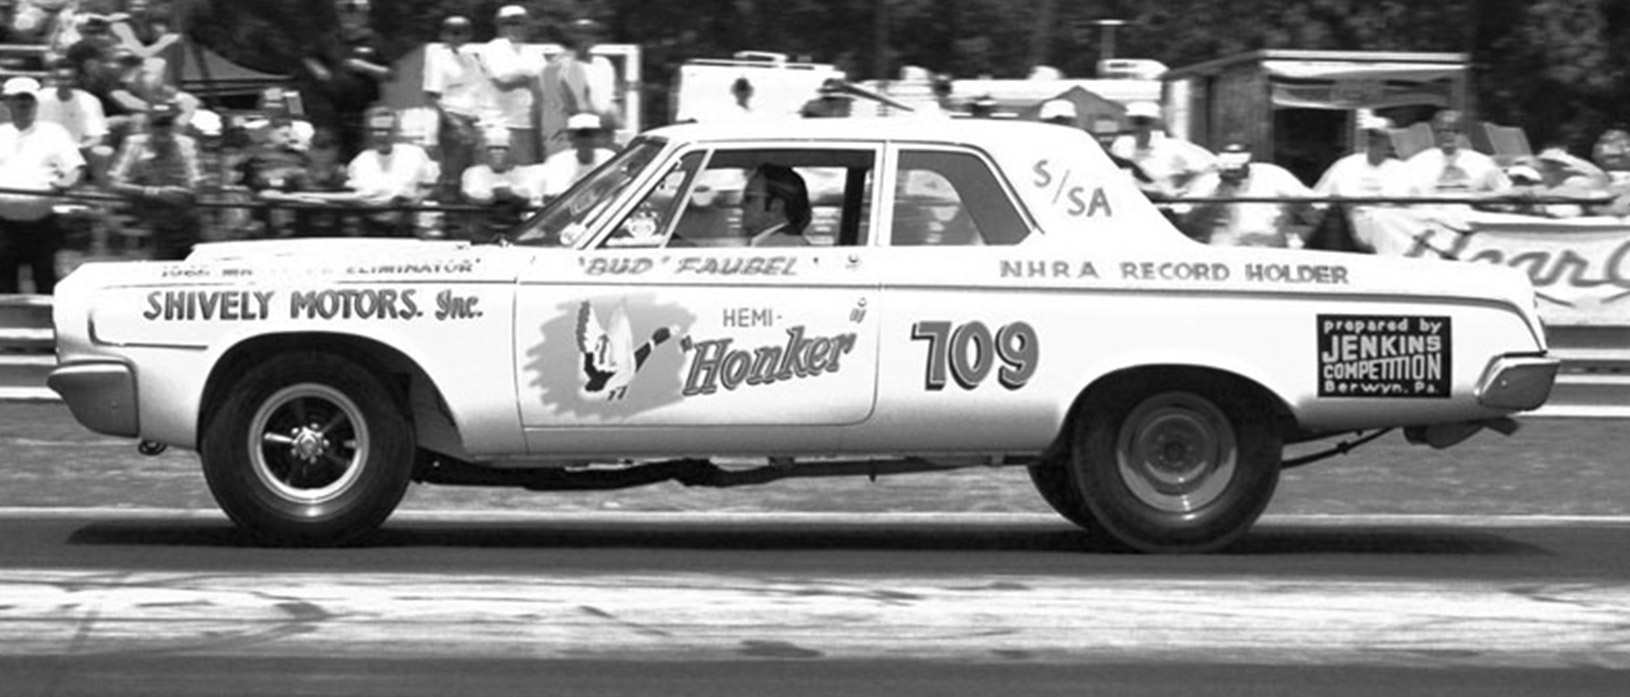 Old Dodge racing at an NHRA race